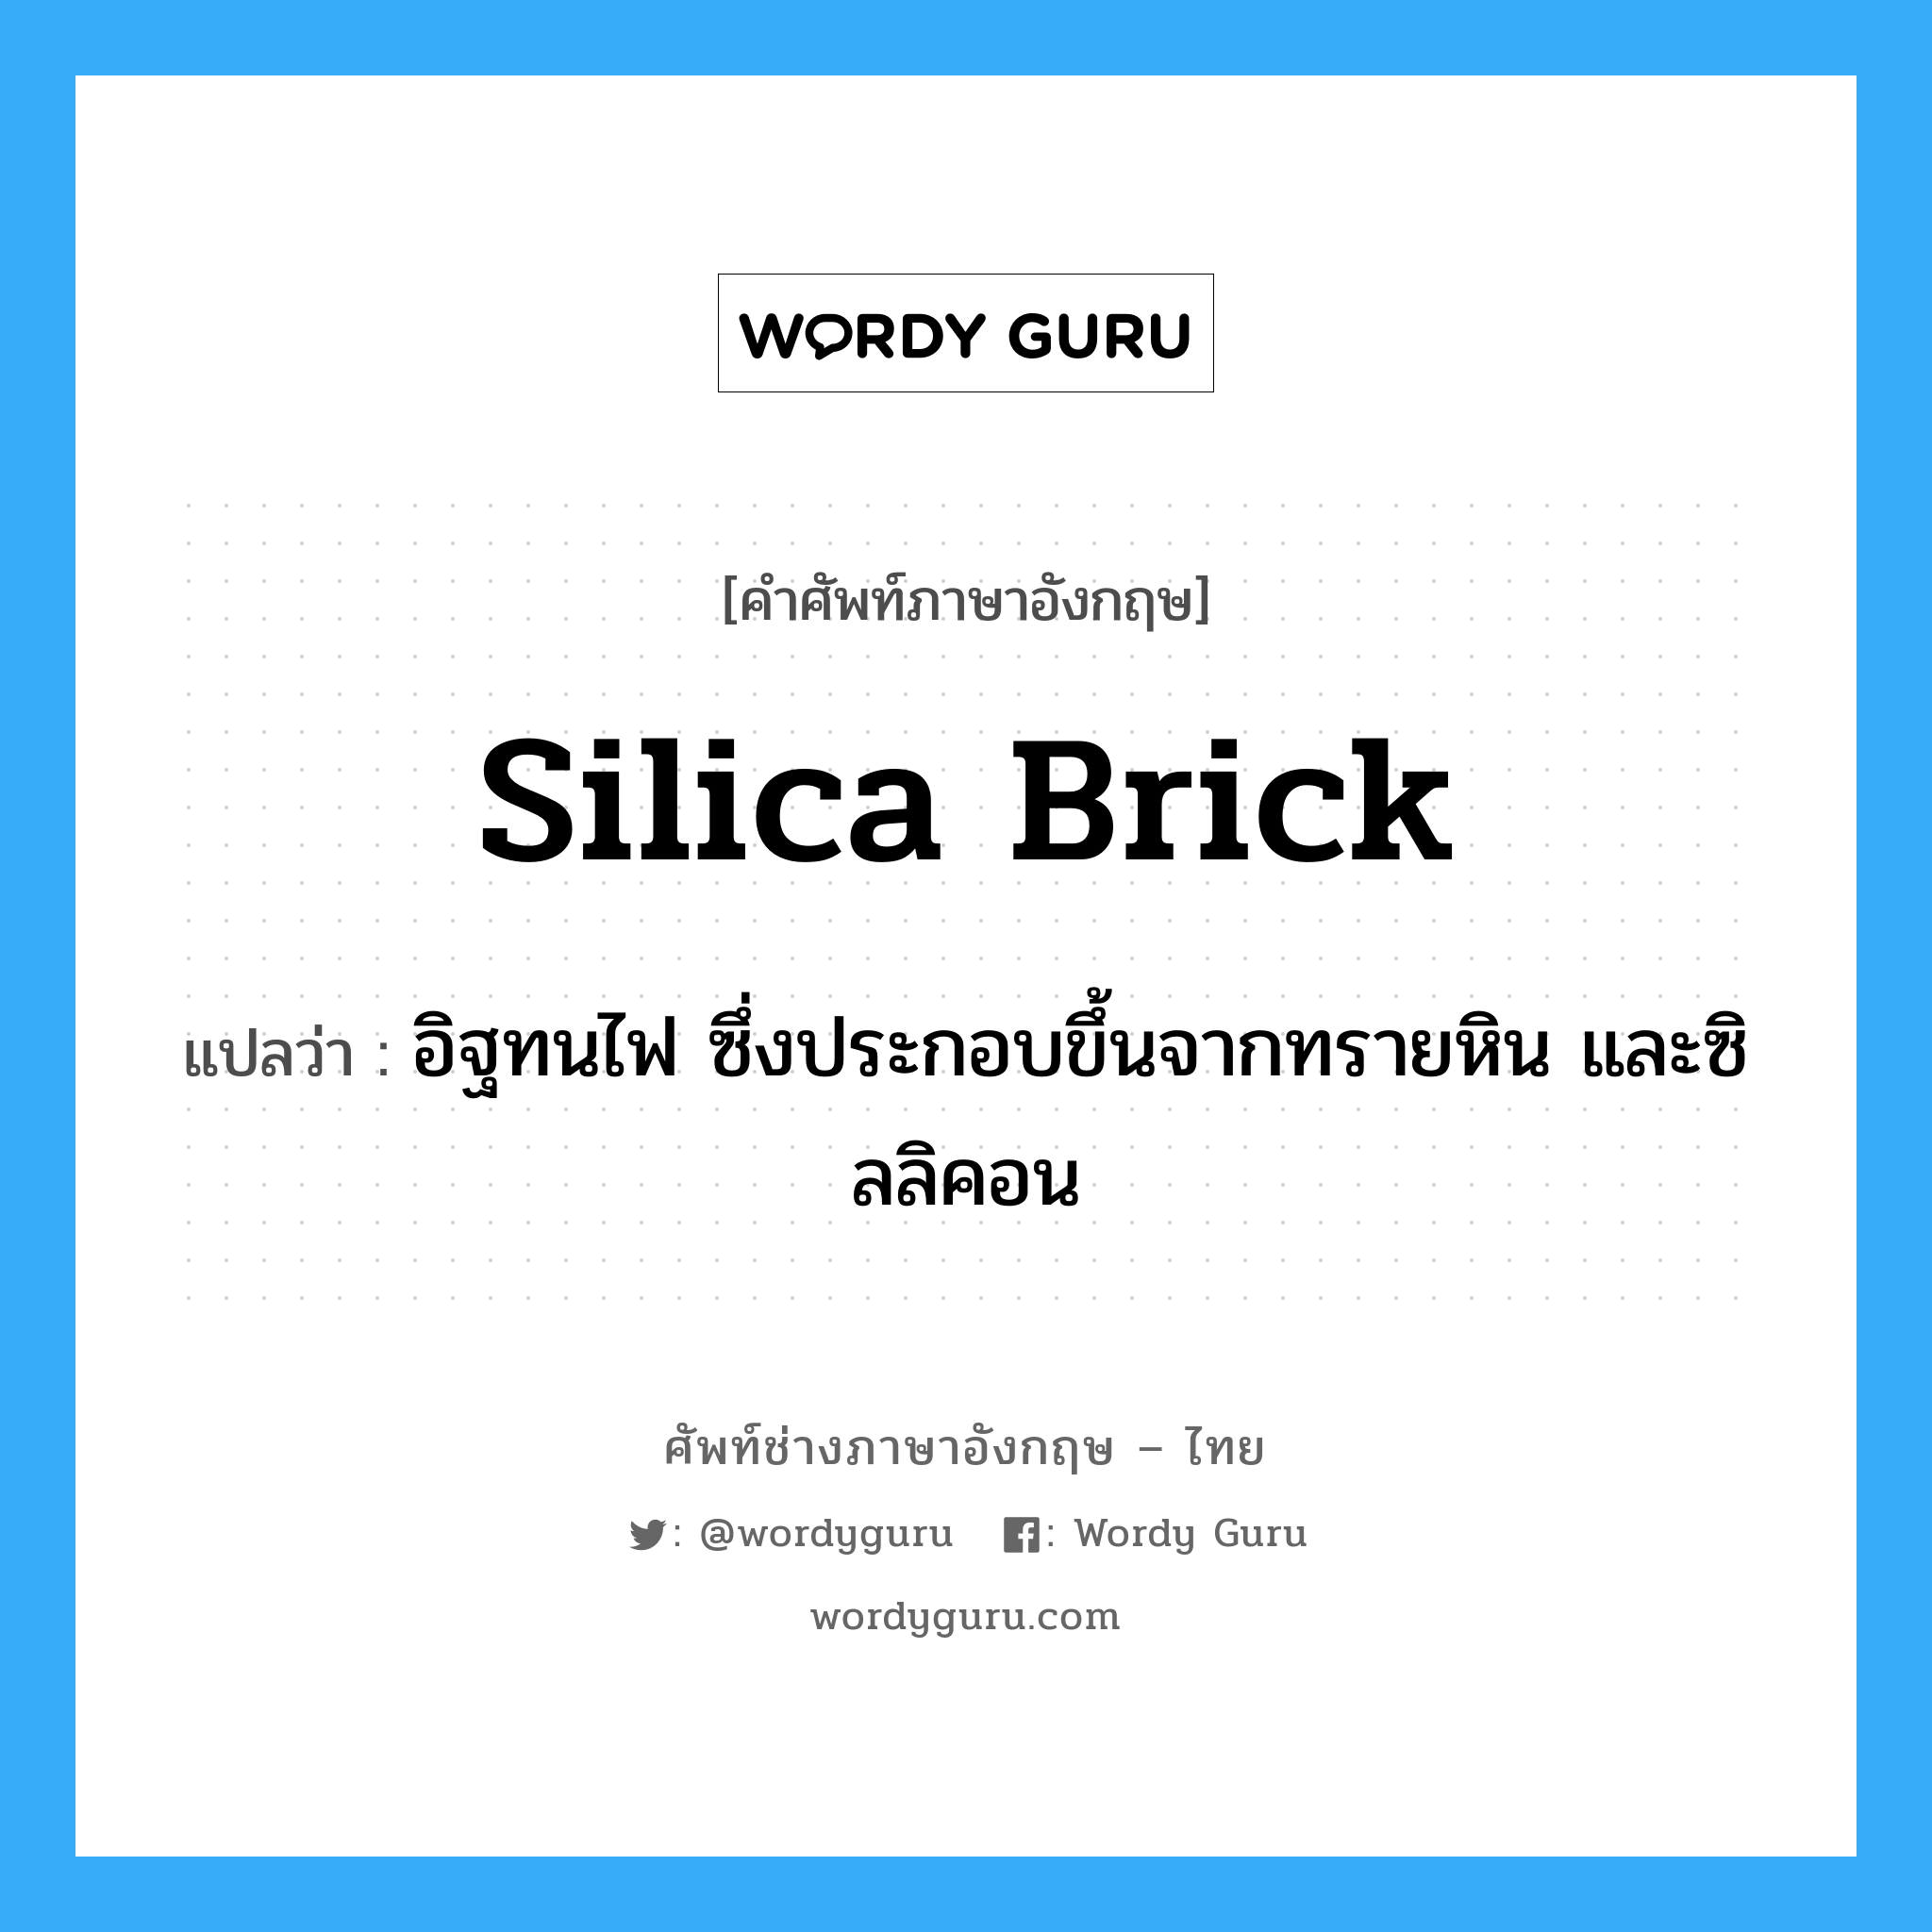 silica brick แปลว่า?, คำศัพท์ช่างภาษาอังกฤษ - ไทย silica brick คำศัพท์ภาษาอังกฤษ silica brick แปลว่า อิฐทนไฟ ซึ่งประกอบขึ้นจากทรายหิน และซิลลิคอน